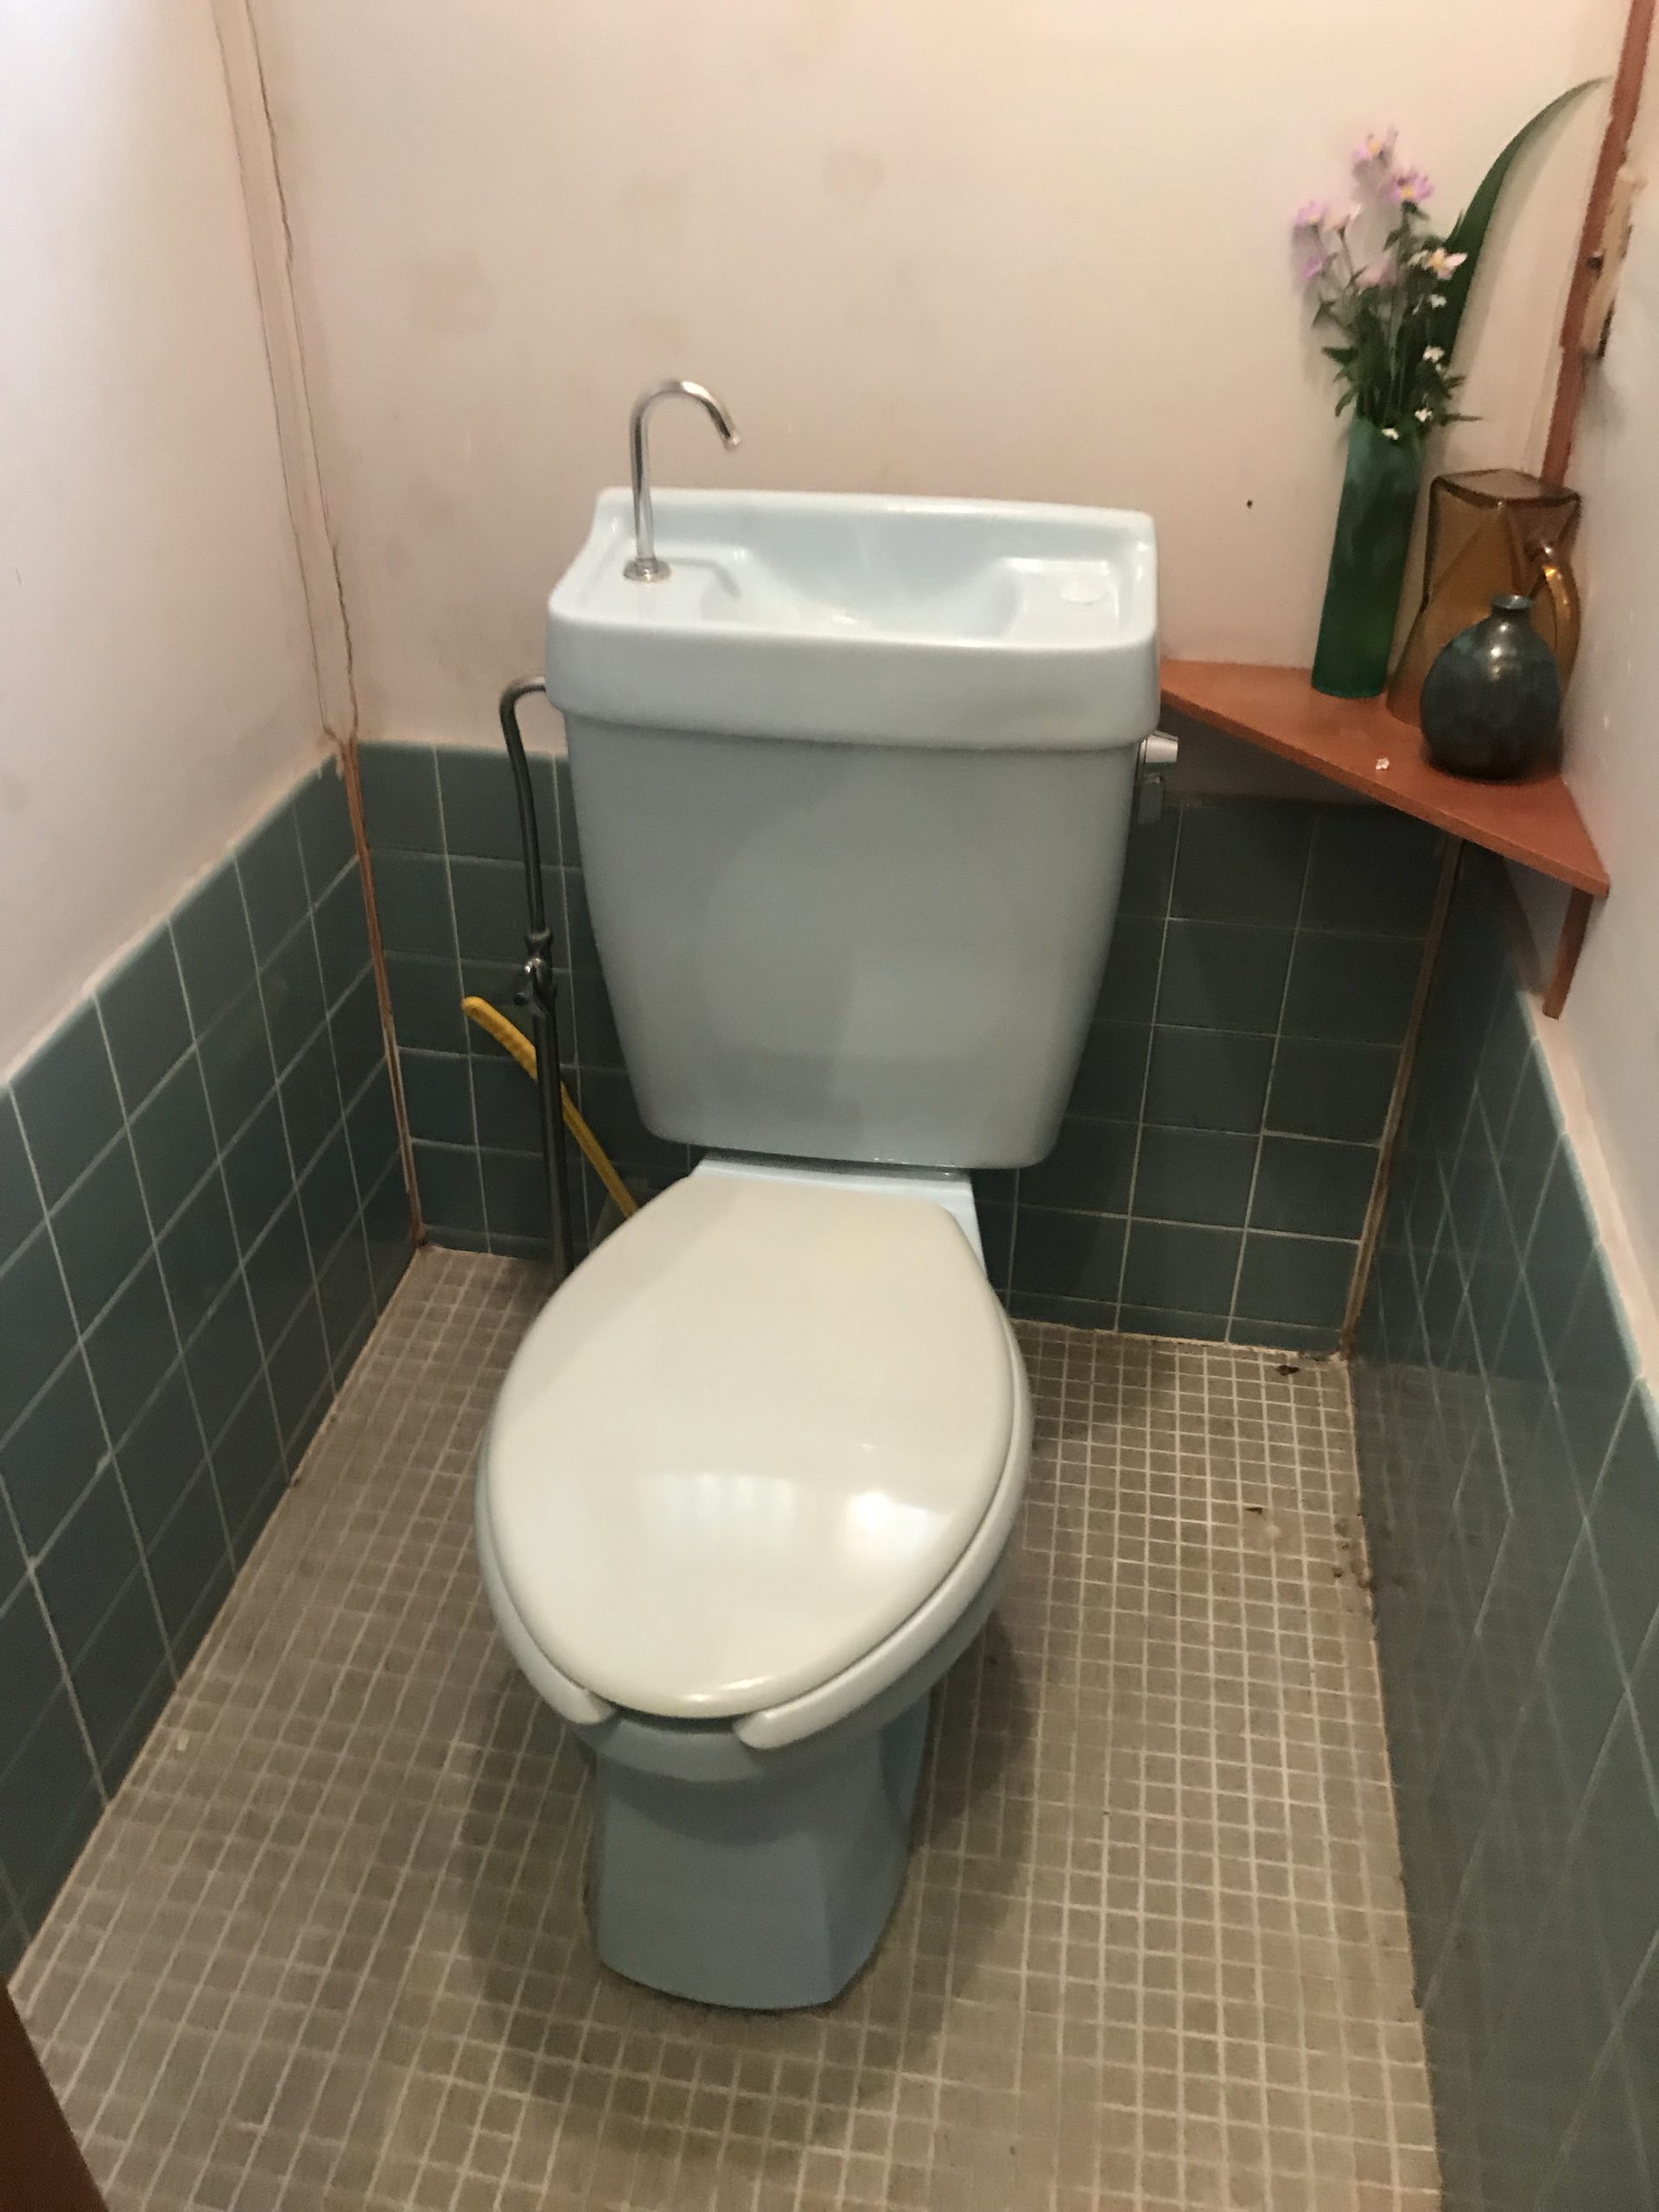 トイレの床の水漏れ 京都市中京区 水もれドルフィン